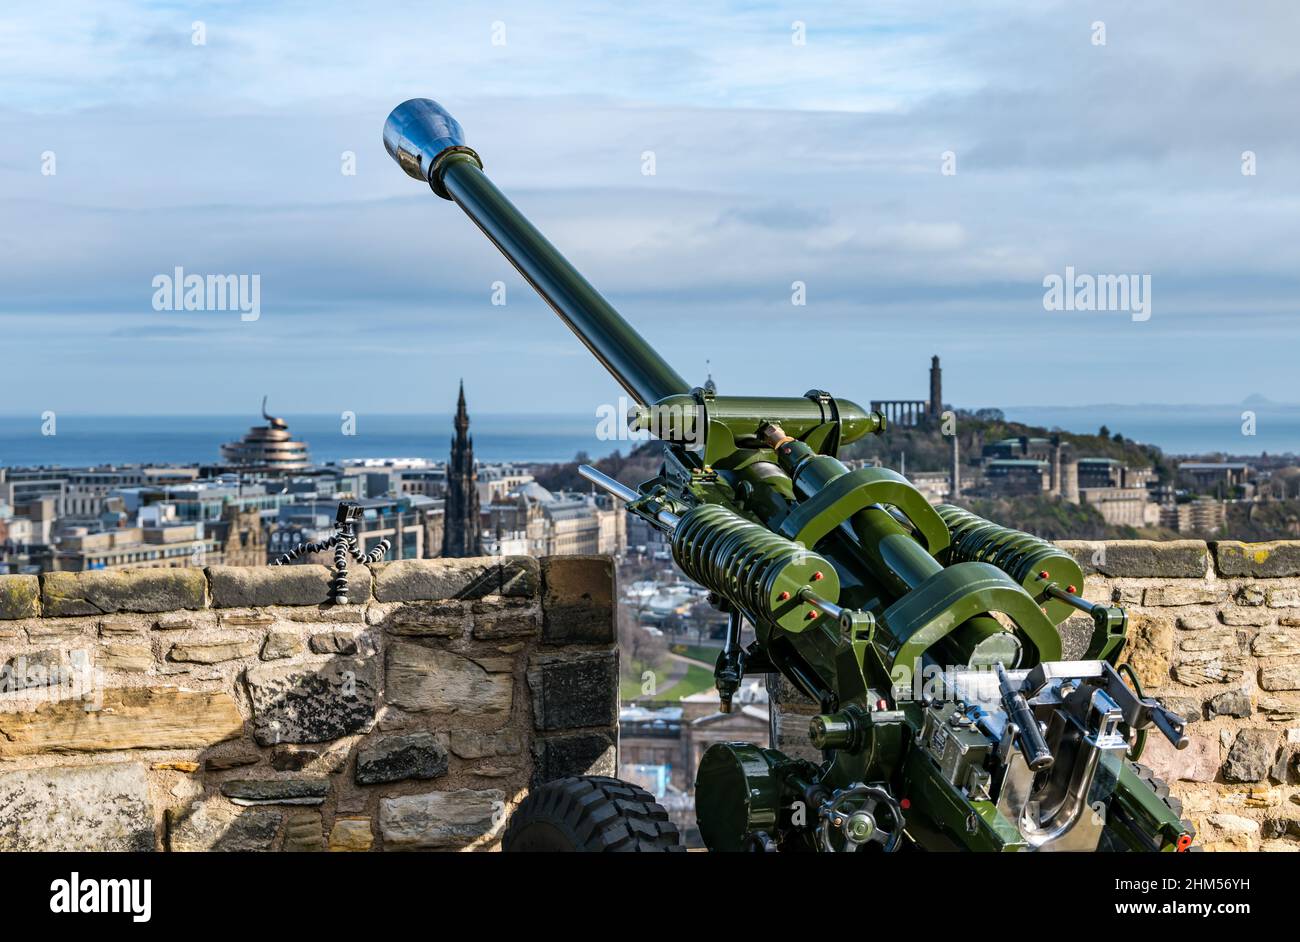 L118 arme d'artillerie légère sur les remparts du château d'Édimbourg surplombant le centre-ville et Calton Hill, Écosse, Royaume-Uni Banque D'Images